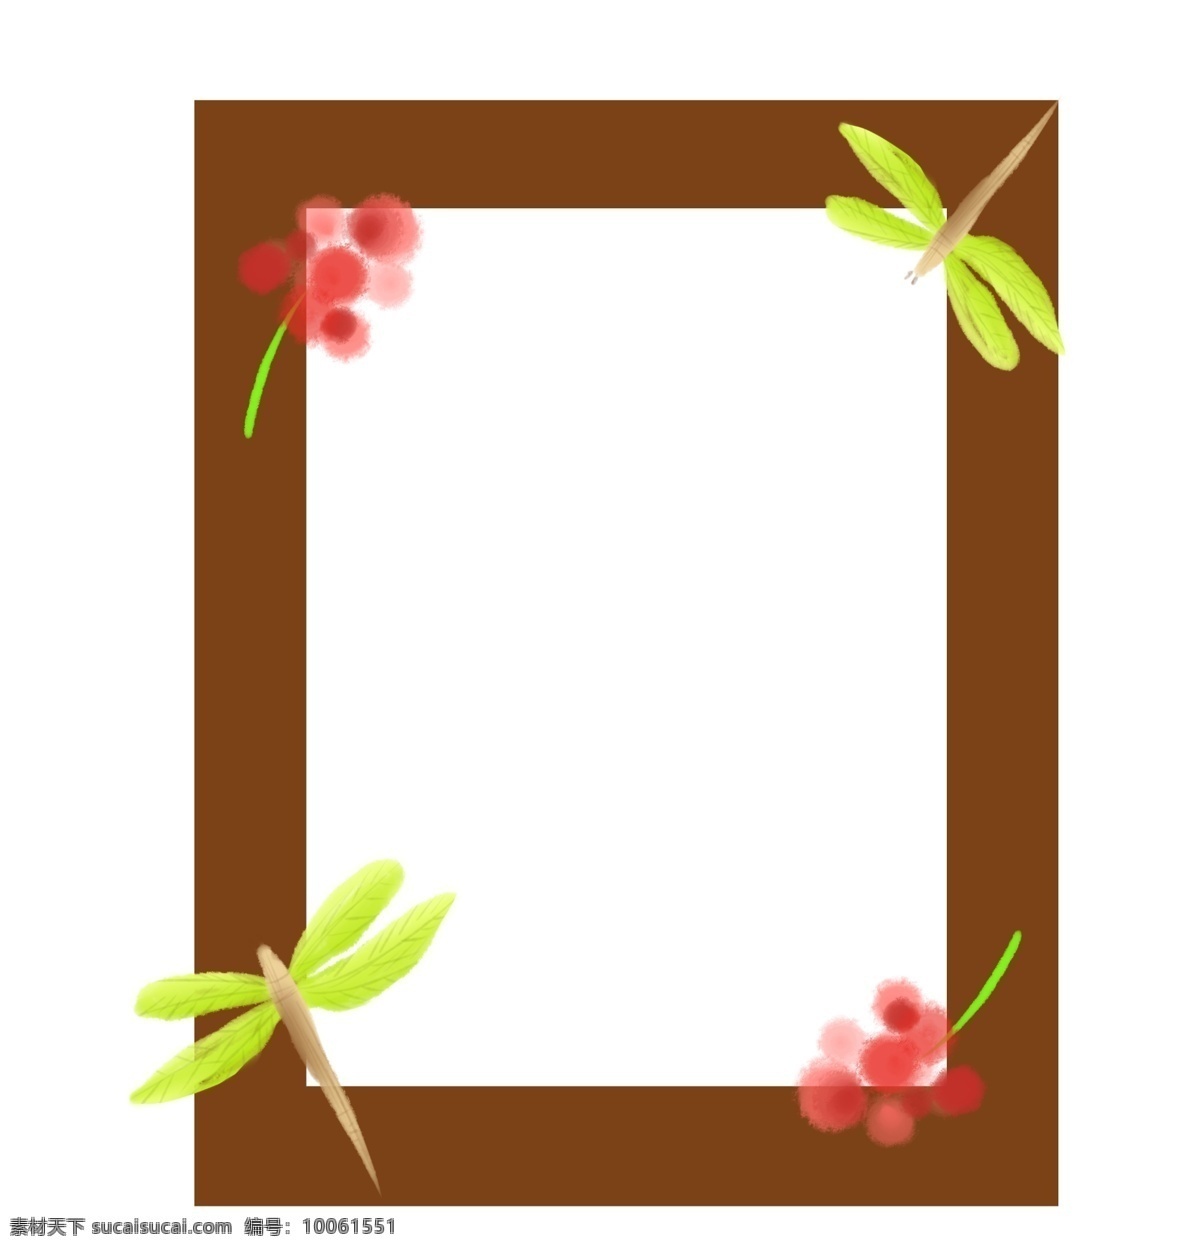 蜻蜓 相框 装饰 插画 红色的相框 蜻蜓相框 植物相框 小花相框 漂亮的相框 创意相框 立体相框